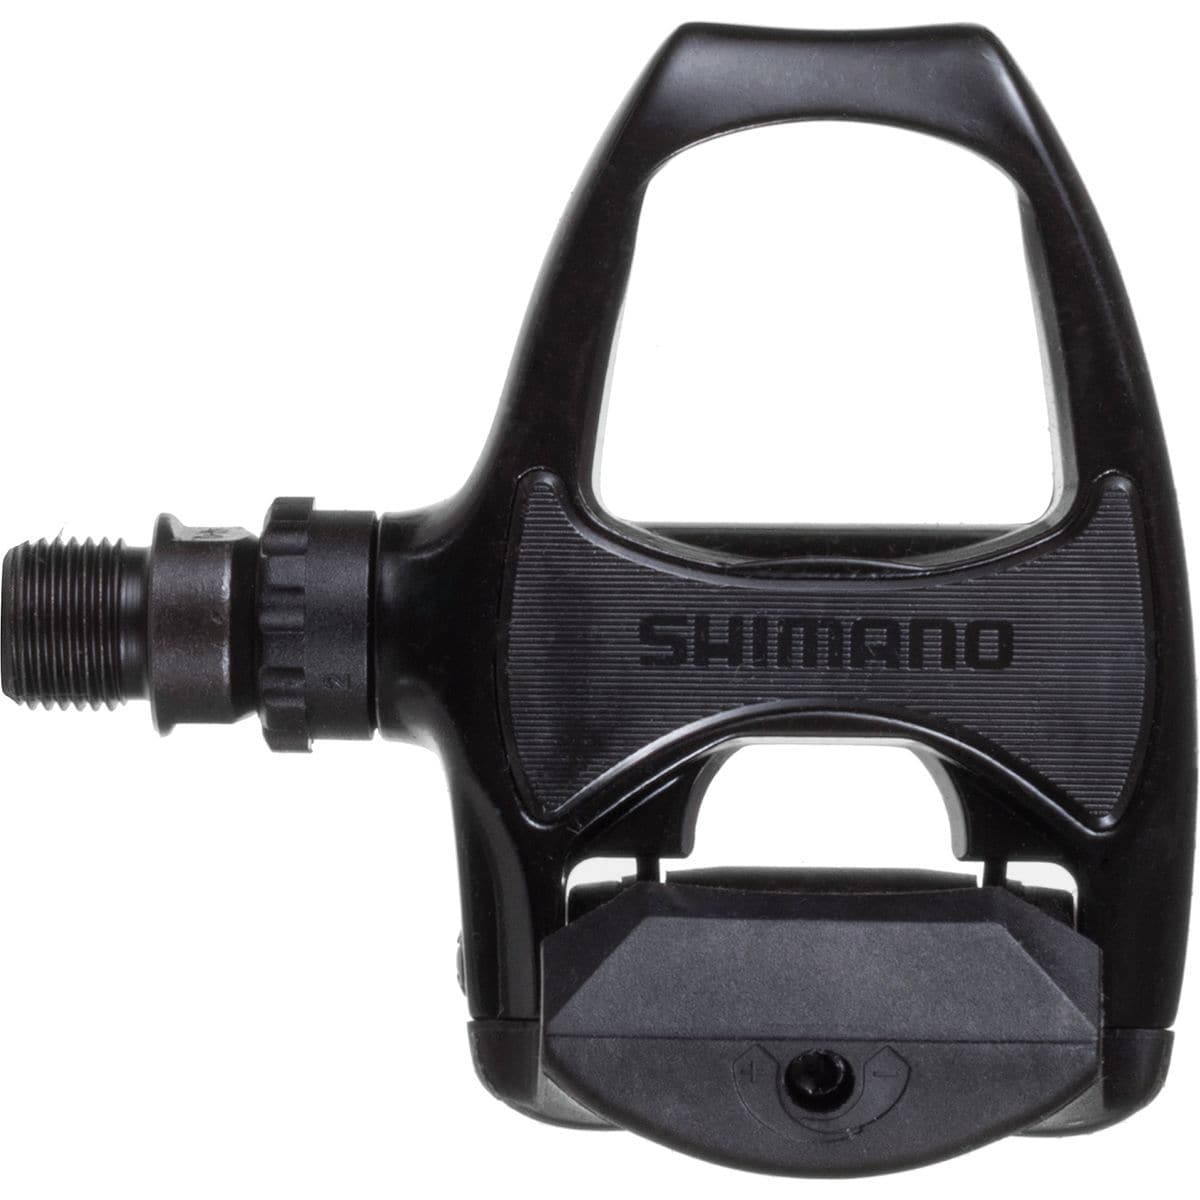 Shimano PD-R540 SPD-SL Road Pedals